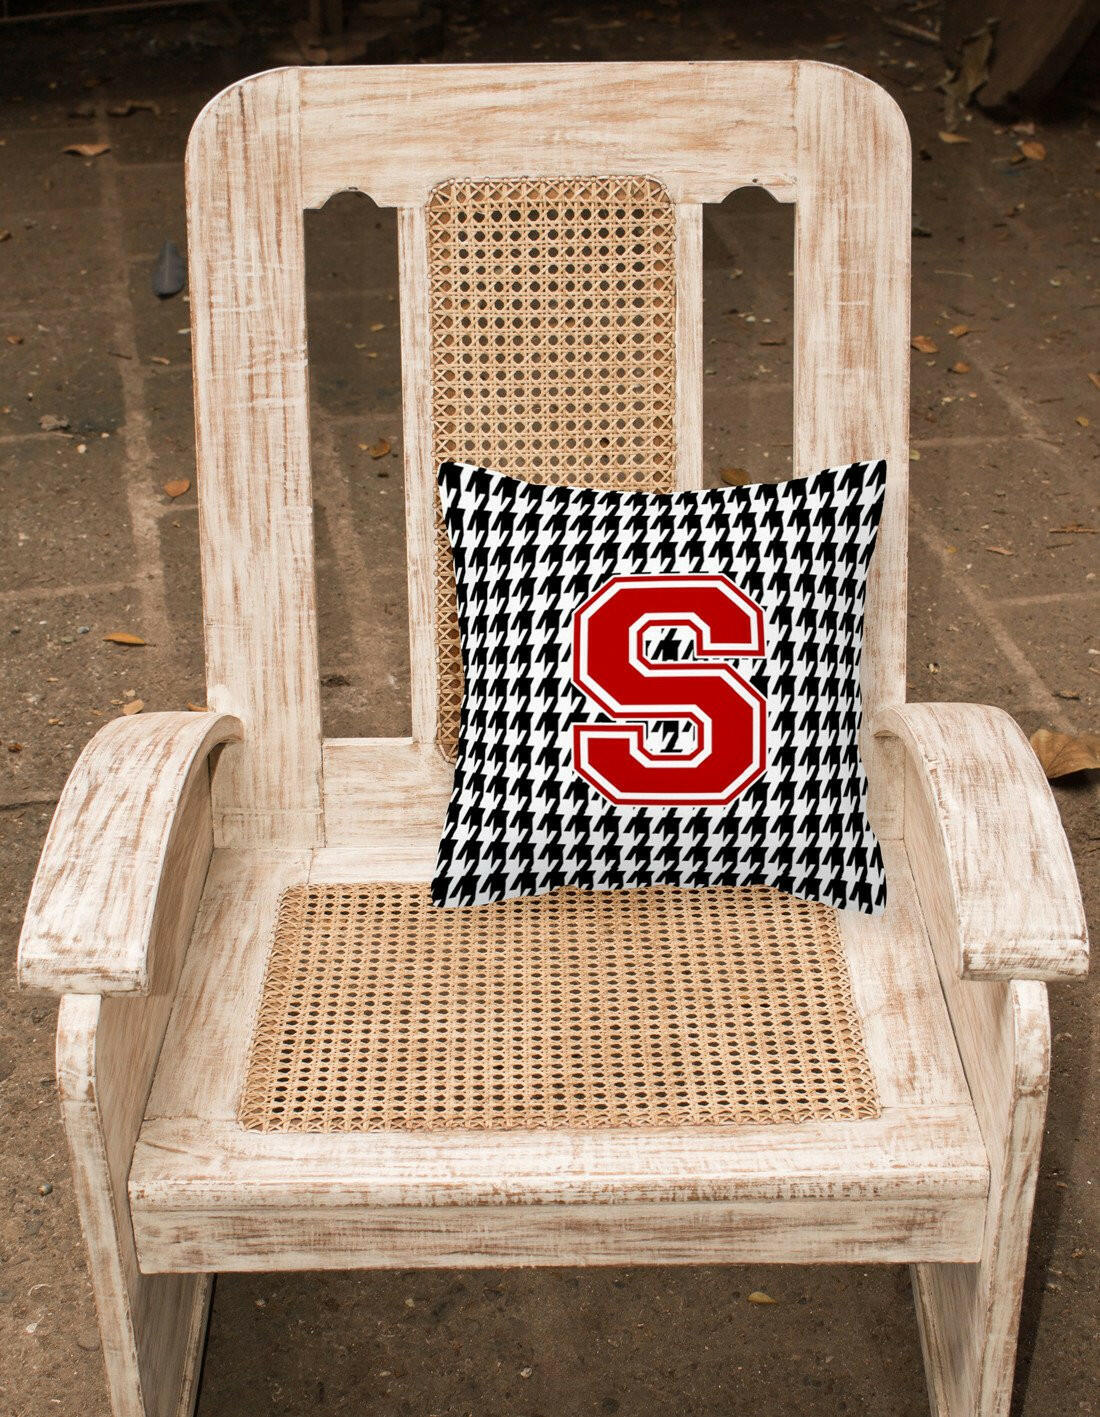 Monogram - Initial S Houndstooth Decorative   Canvas Fabric Pillow CJ1021 - the-store.com